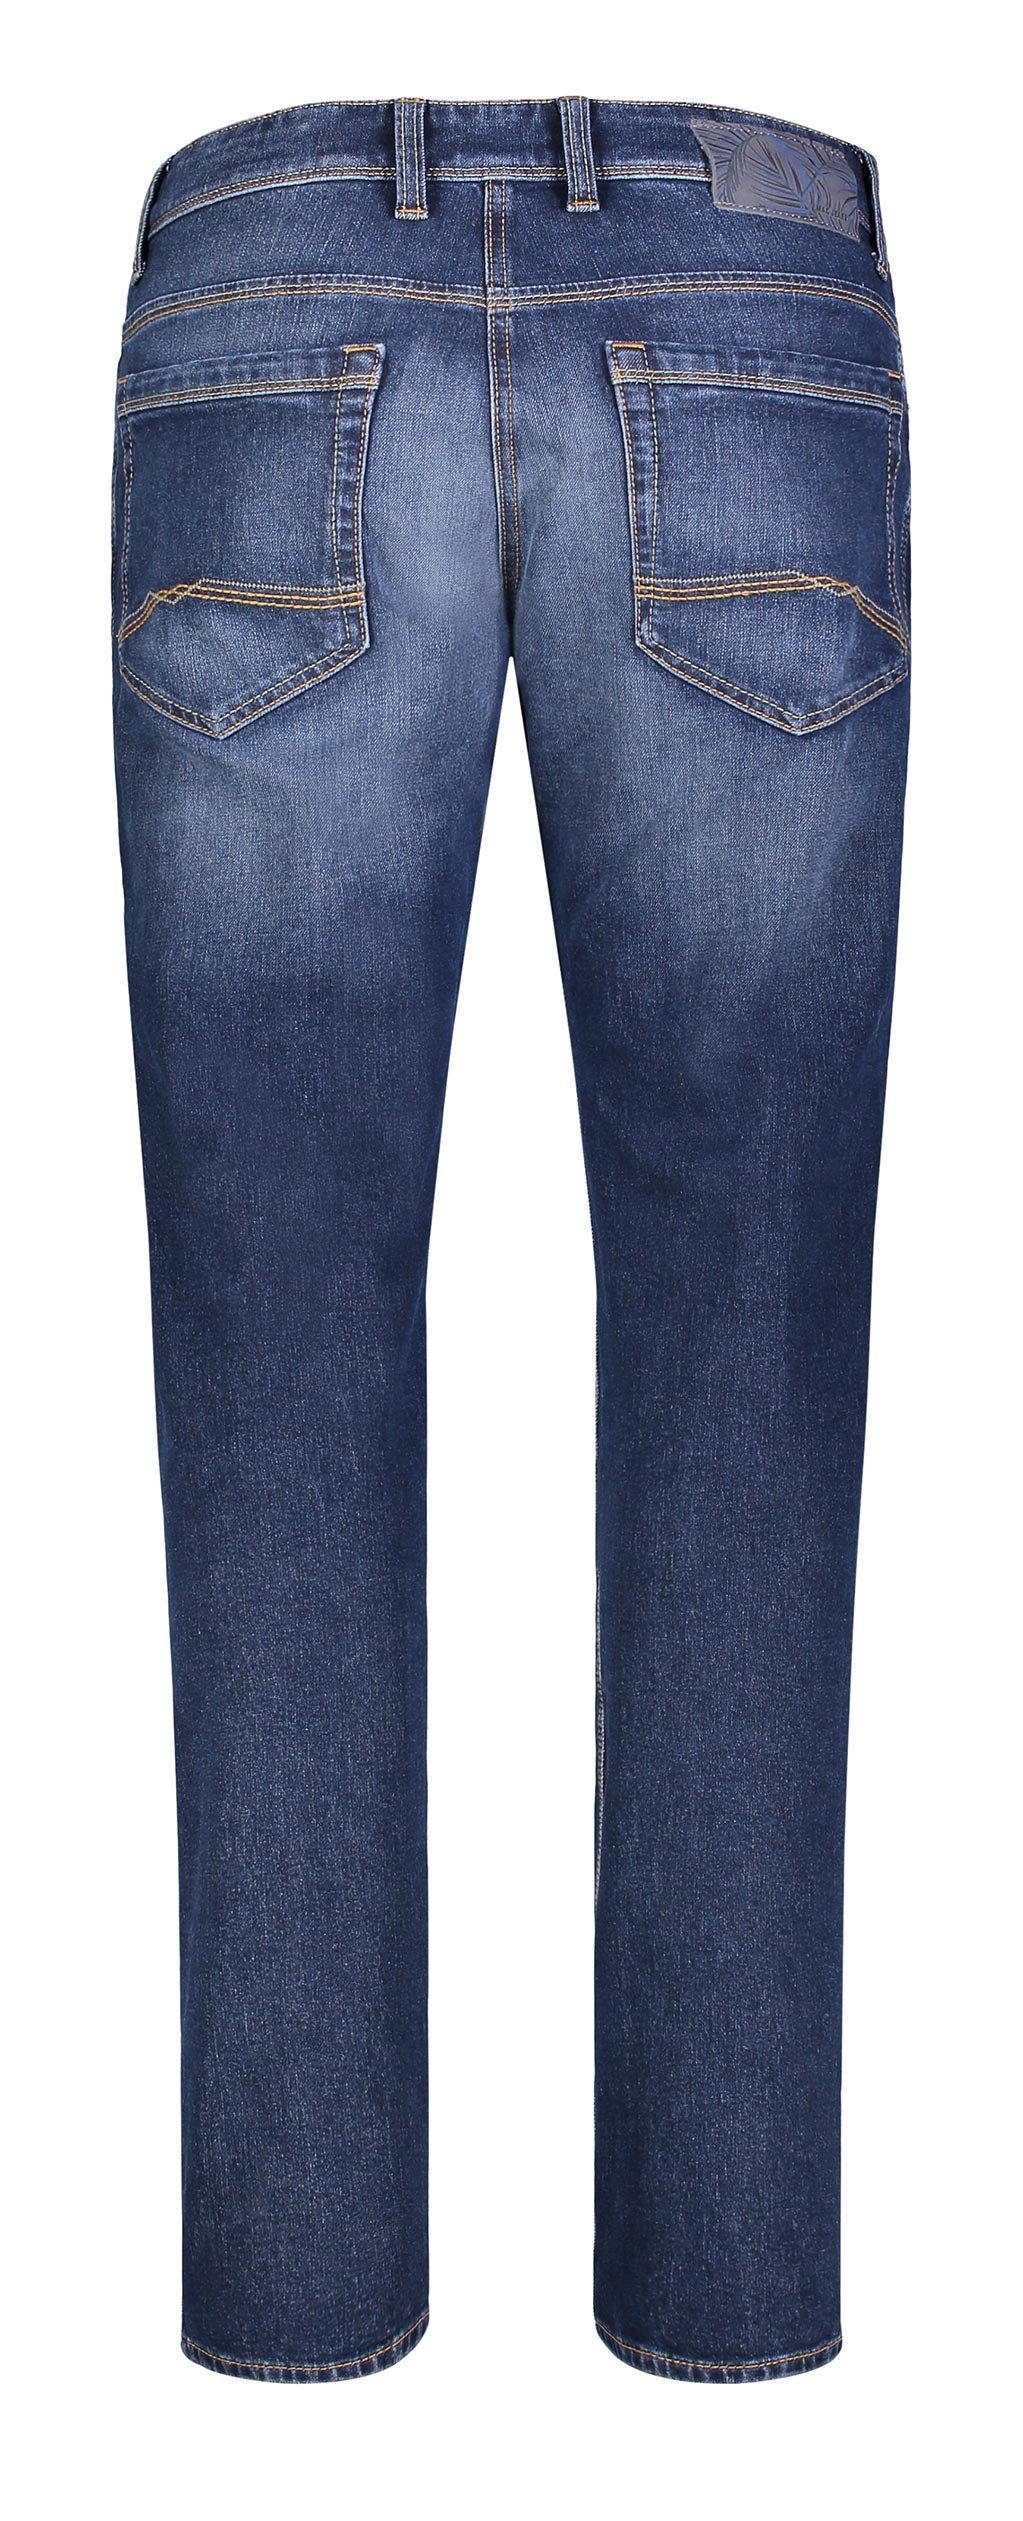 0383-90-0960L 5-Pocket-Jeans blue DOUBLEFLEXX wash H666 carbon authentic BEN MAC MAC